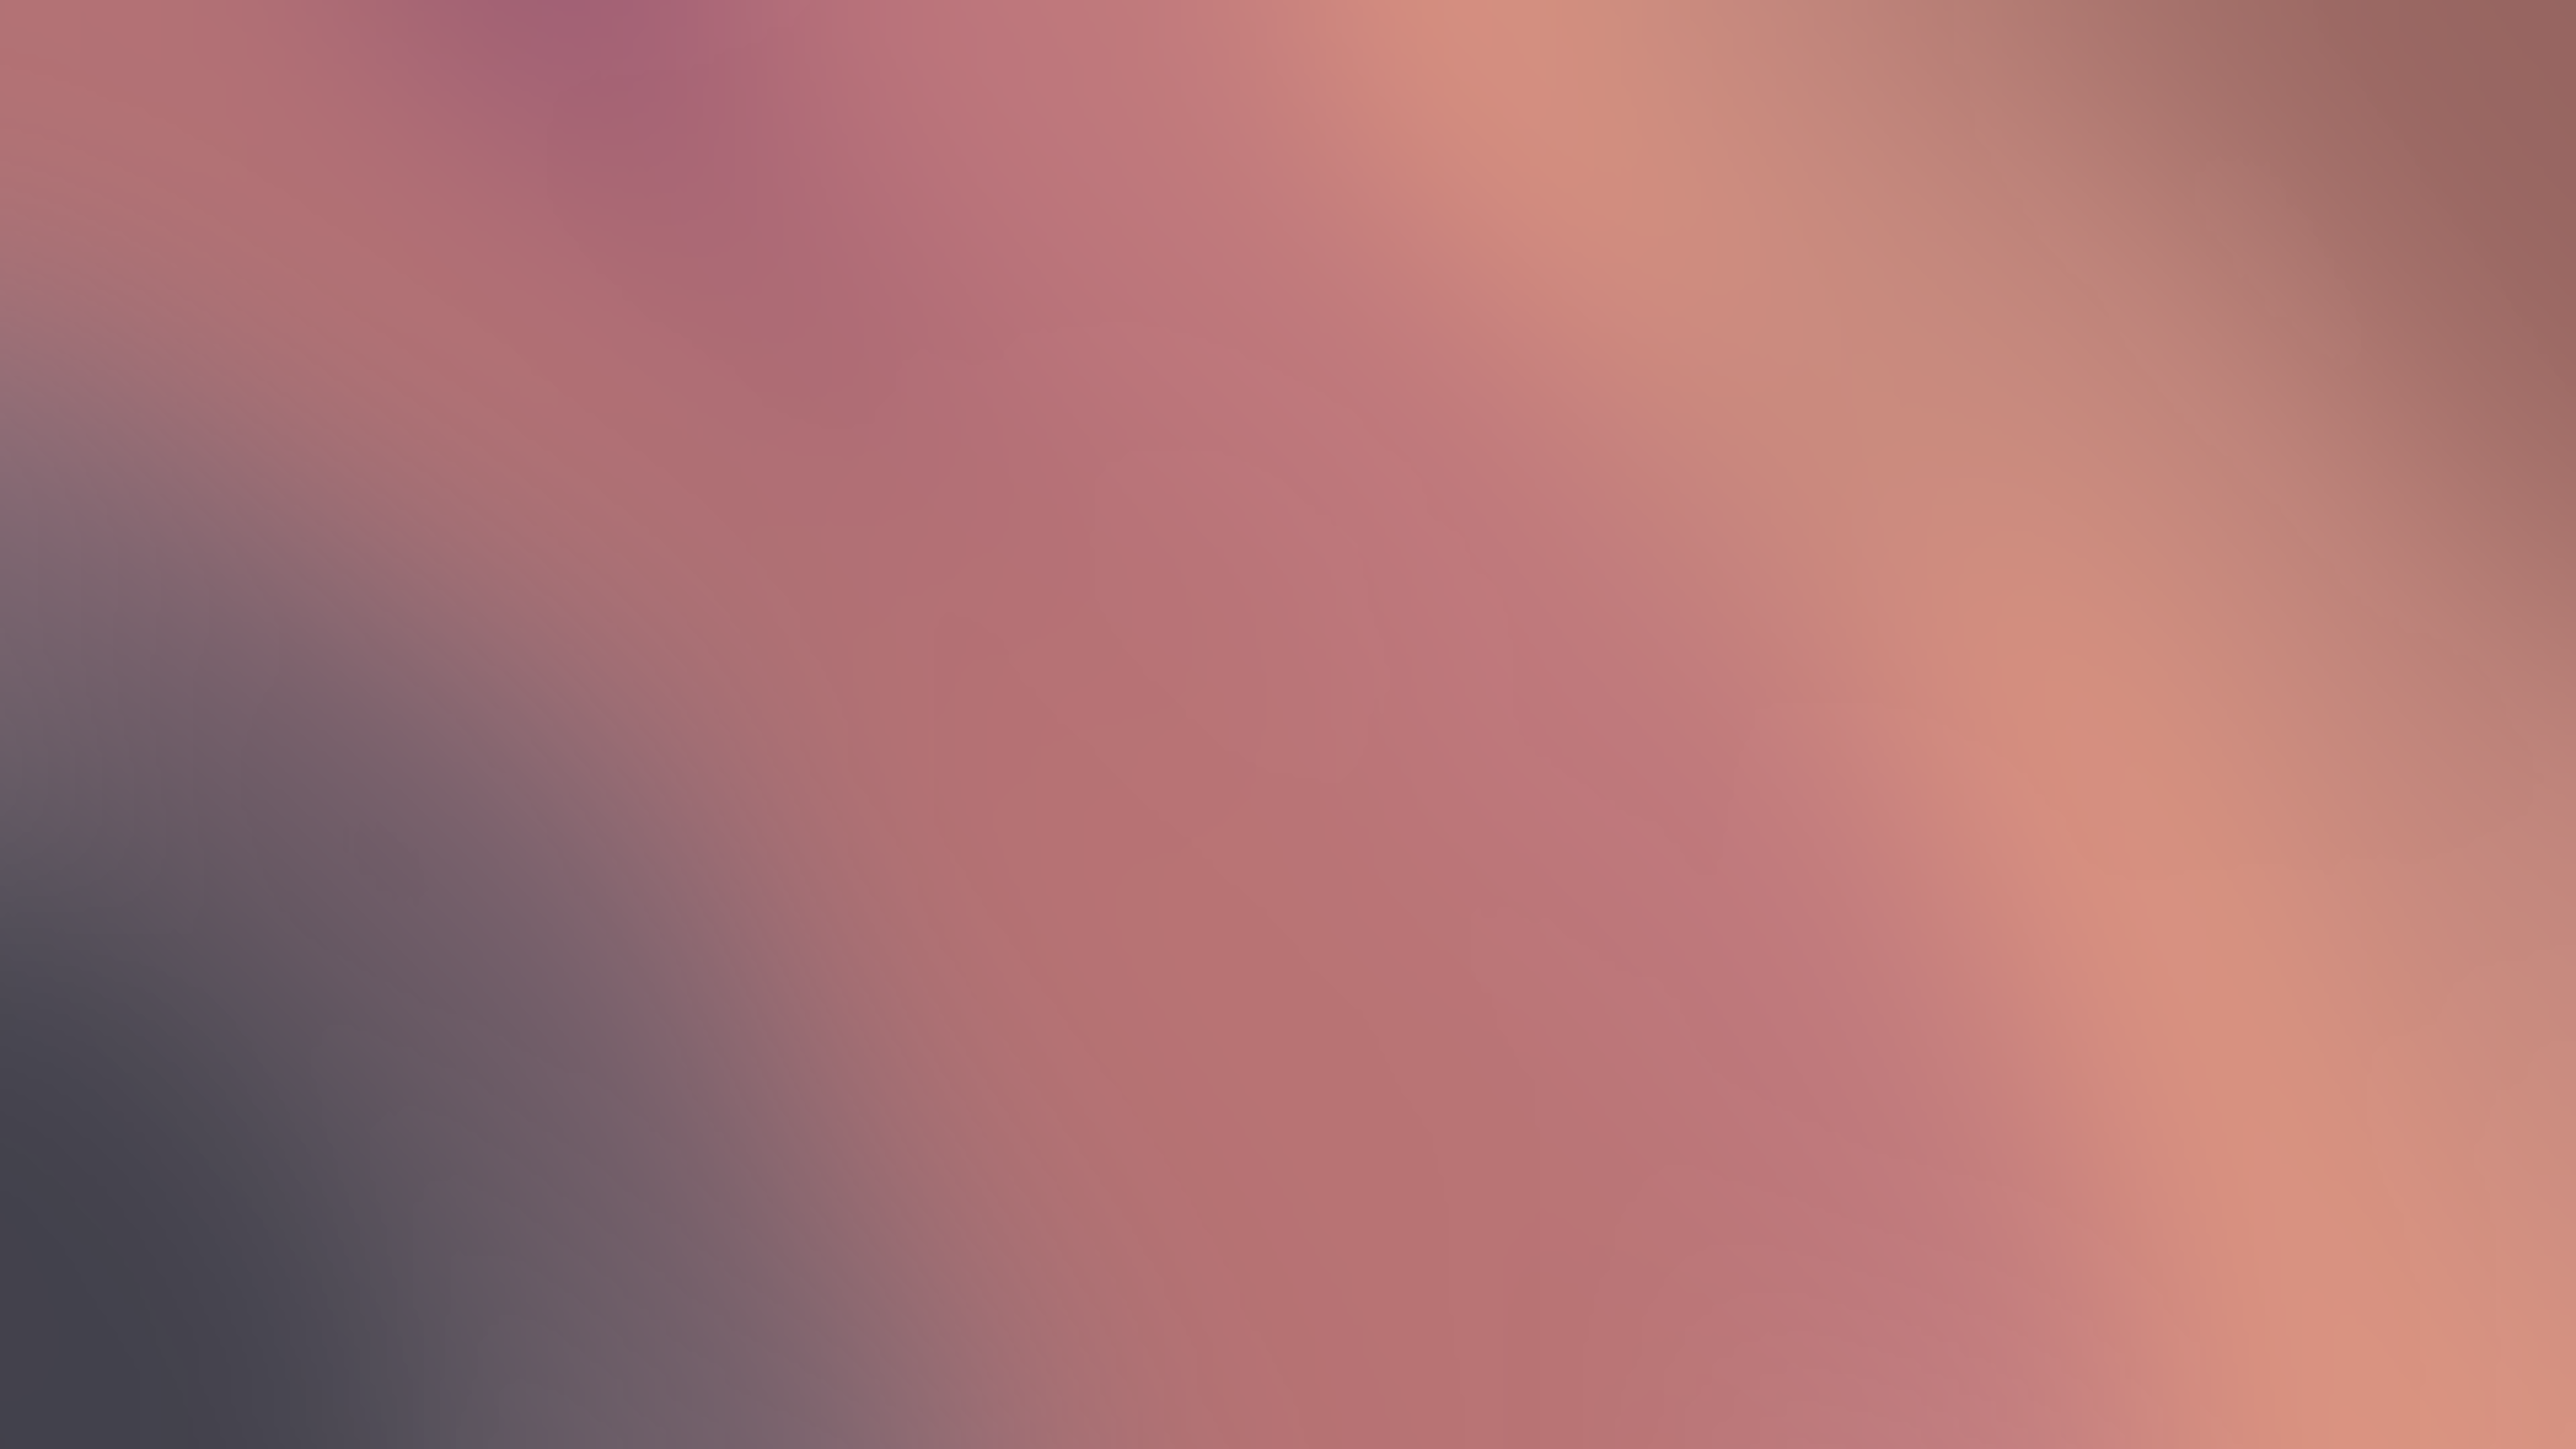 Gradient Soft Gradient Blurred Blurry Background Texture Minimalism 15360x8640